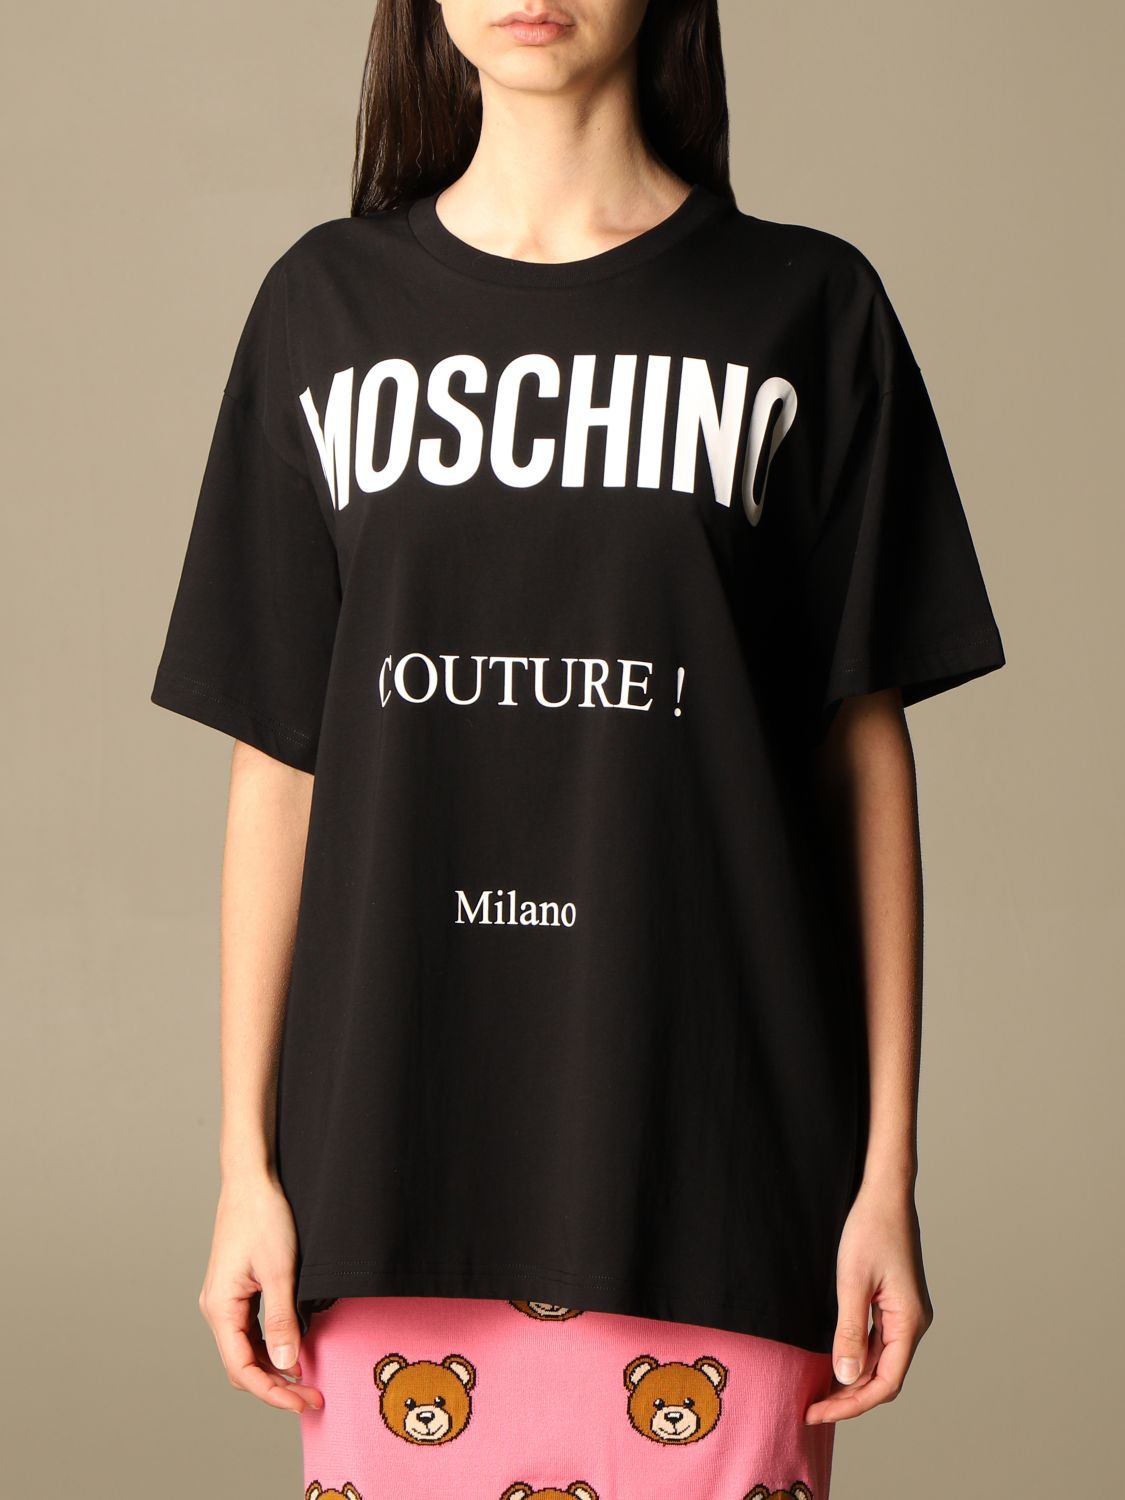 moschino t shirt women's oversized